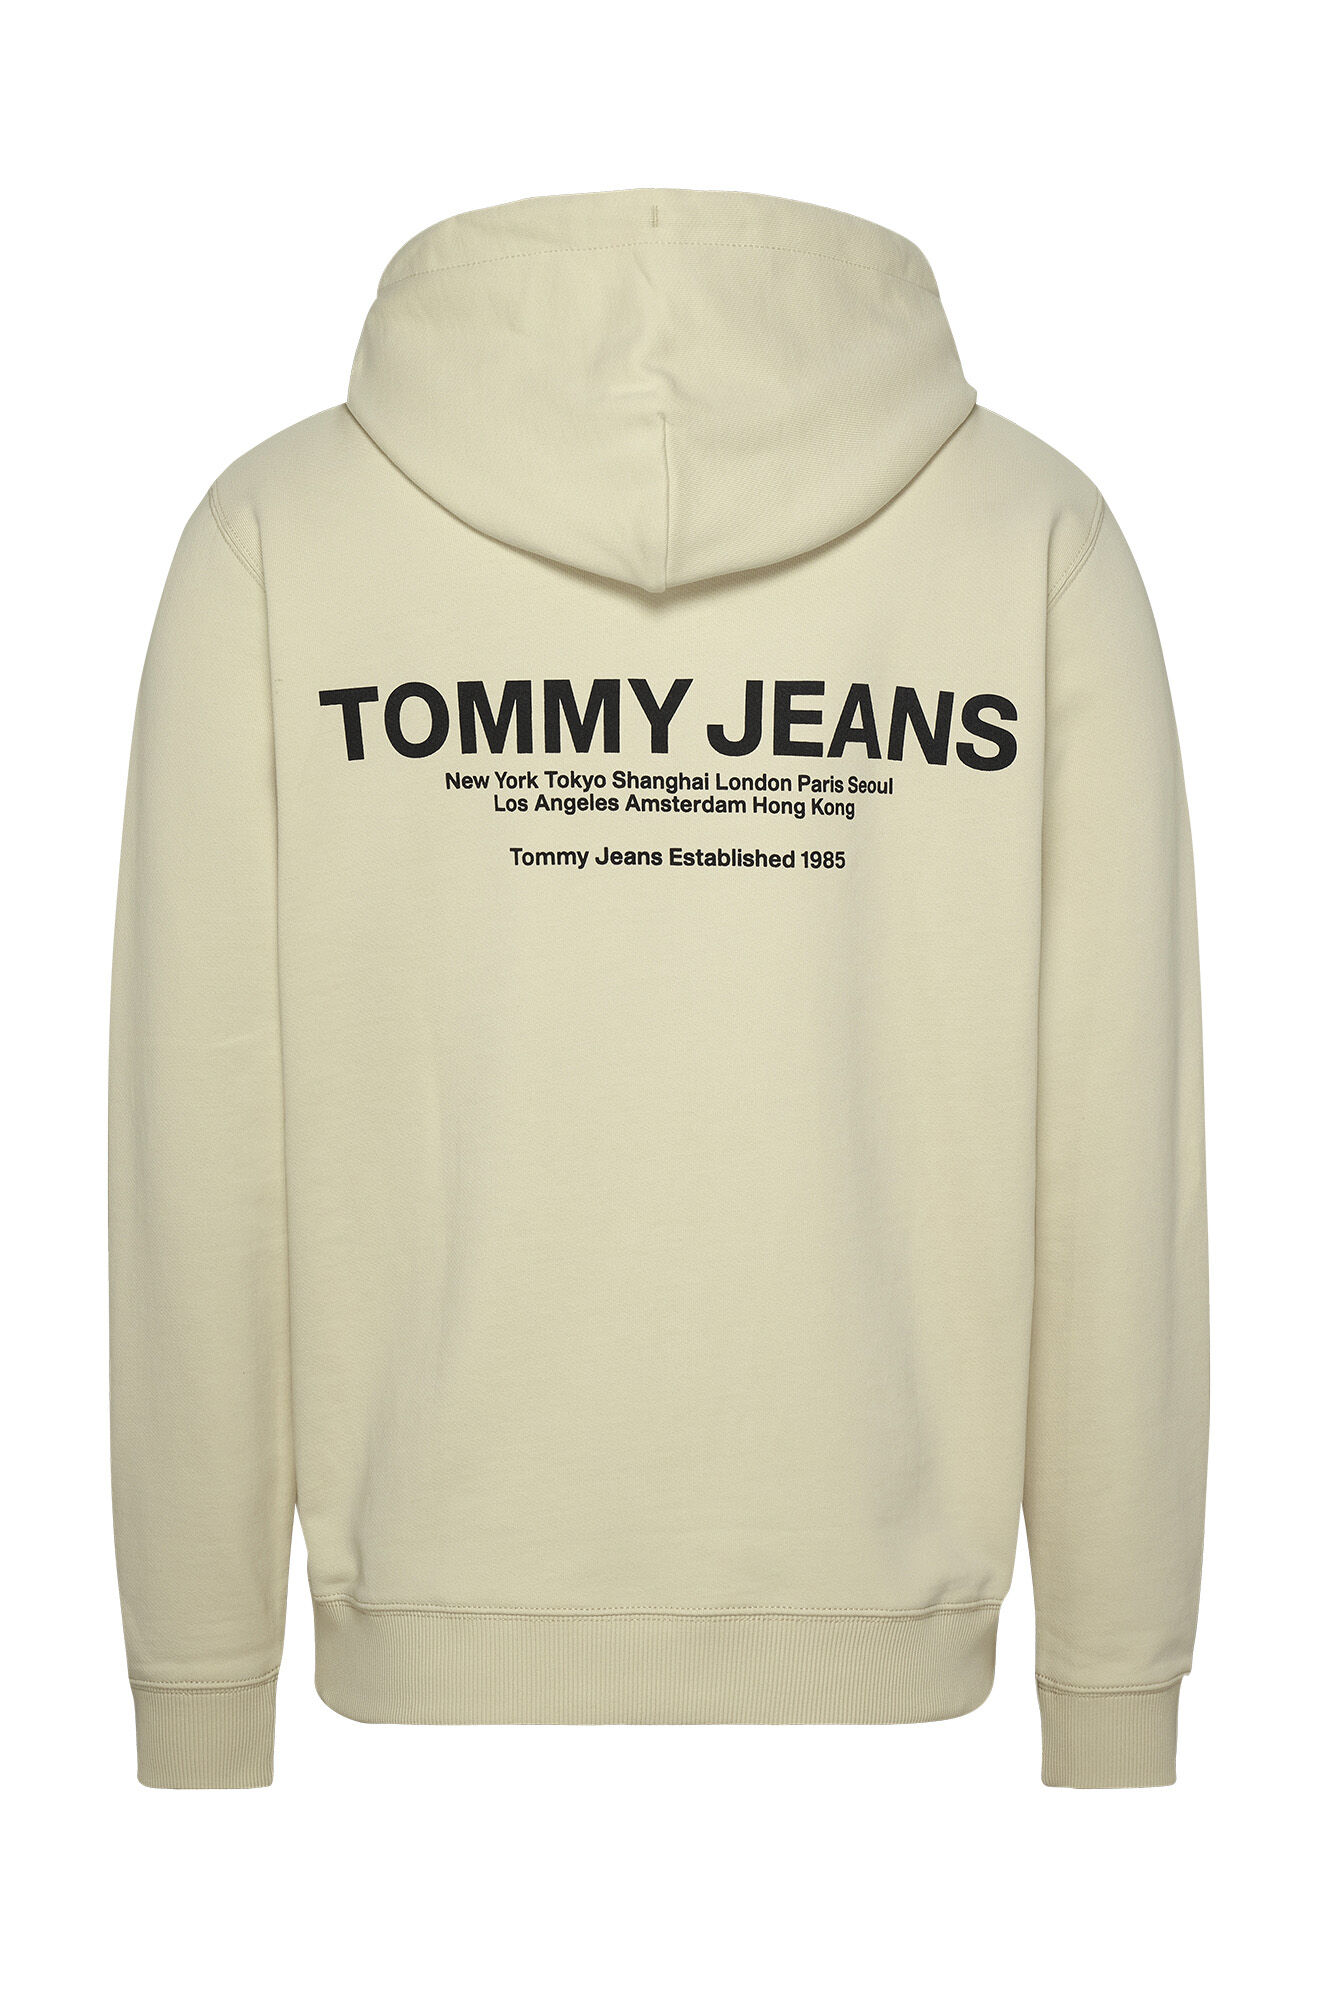 Tommy Jeans men's hoodie.